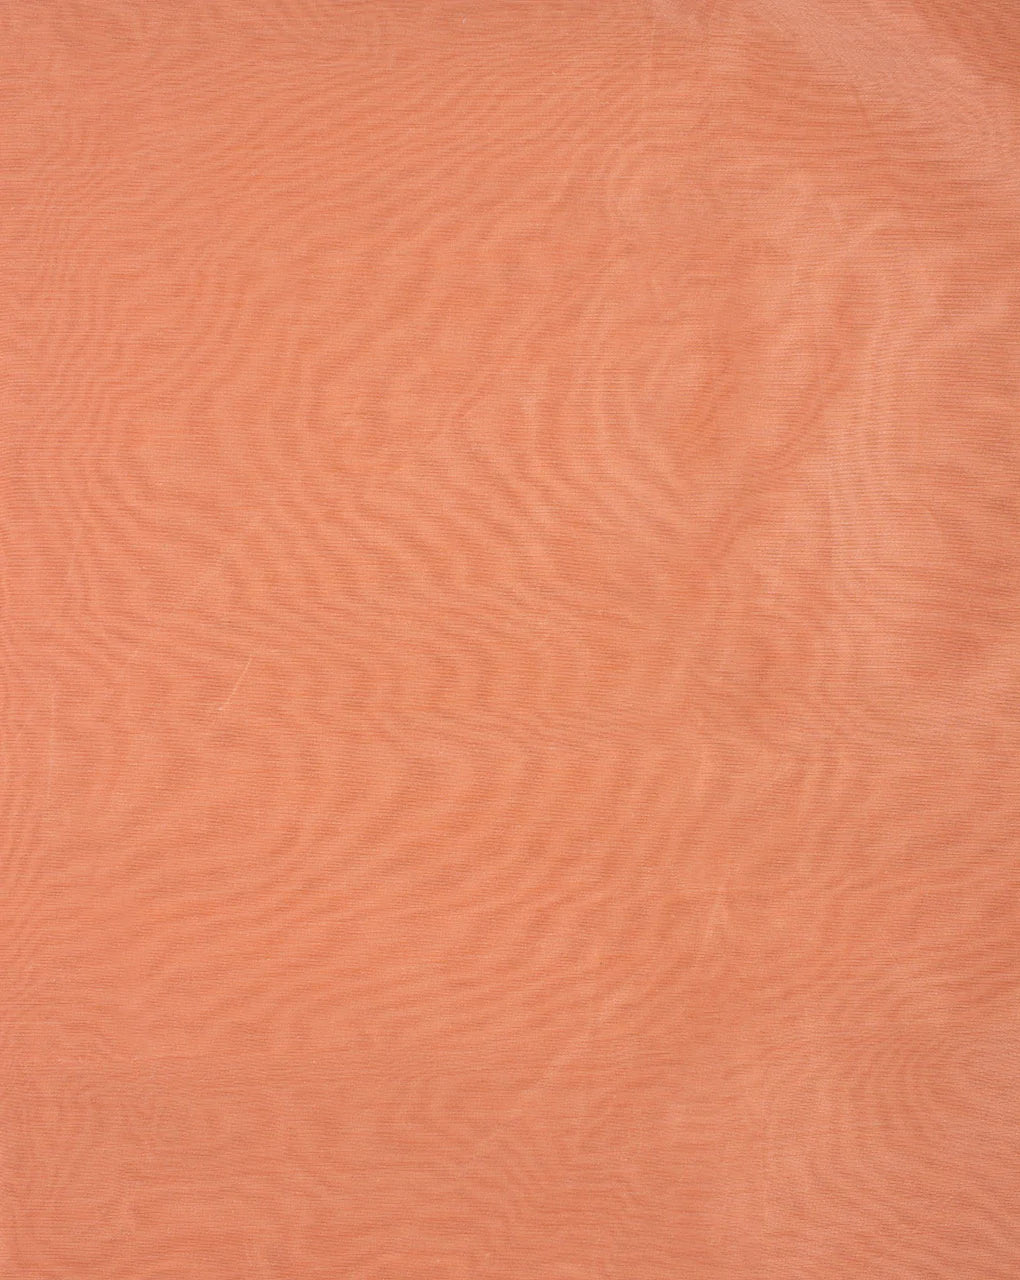 Peach Plain Banarasi Chanderi Fabric - Fabriclore.com